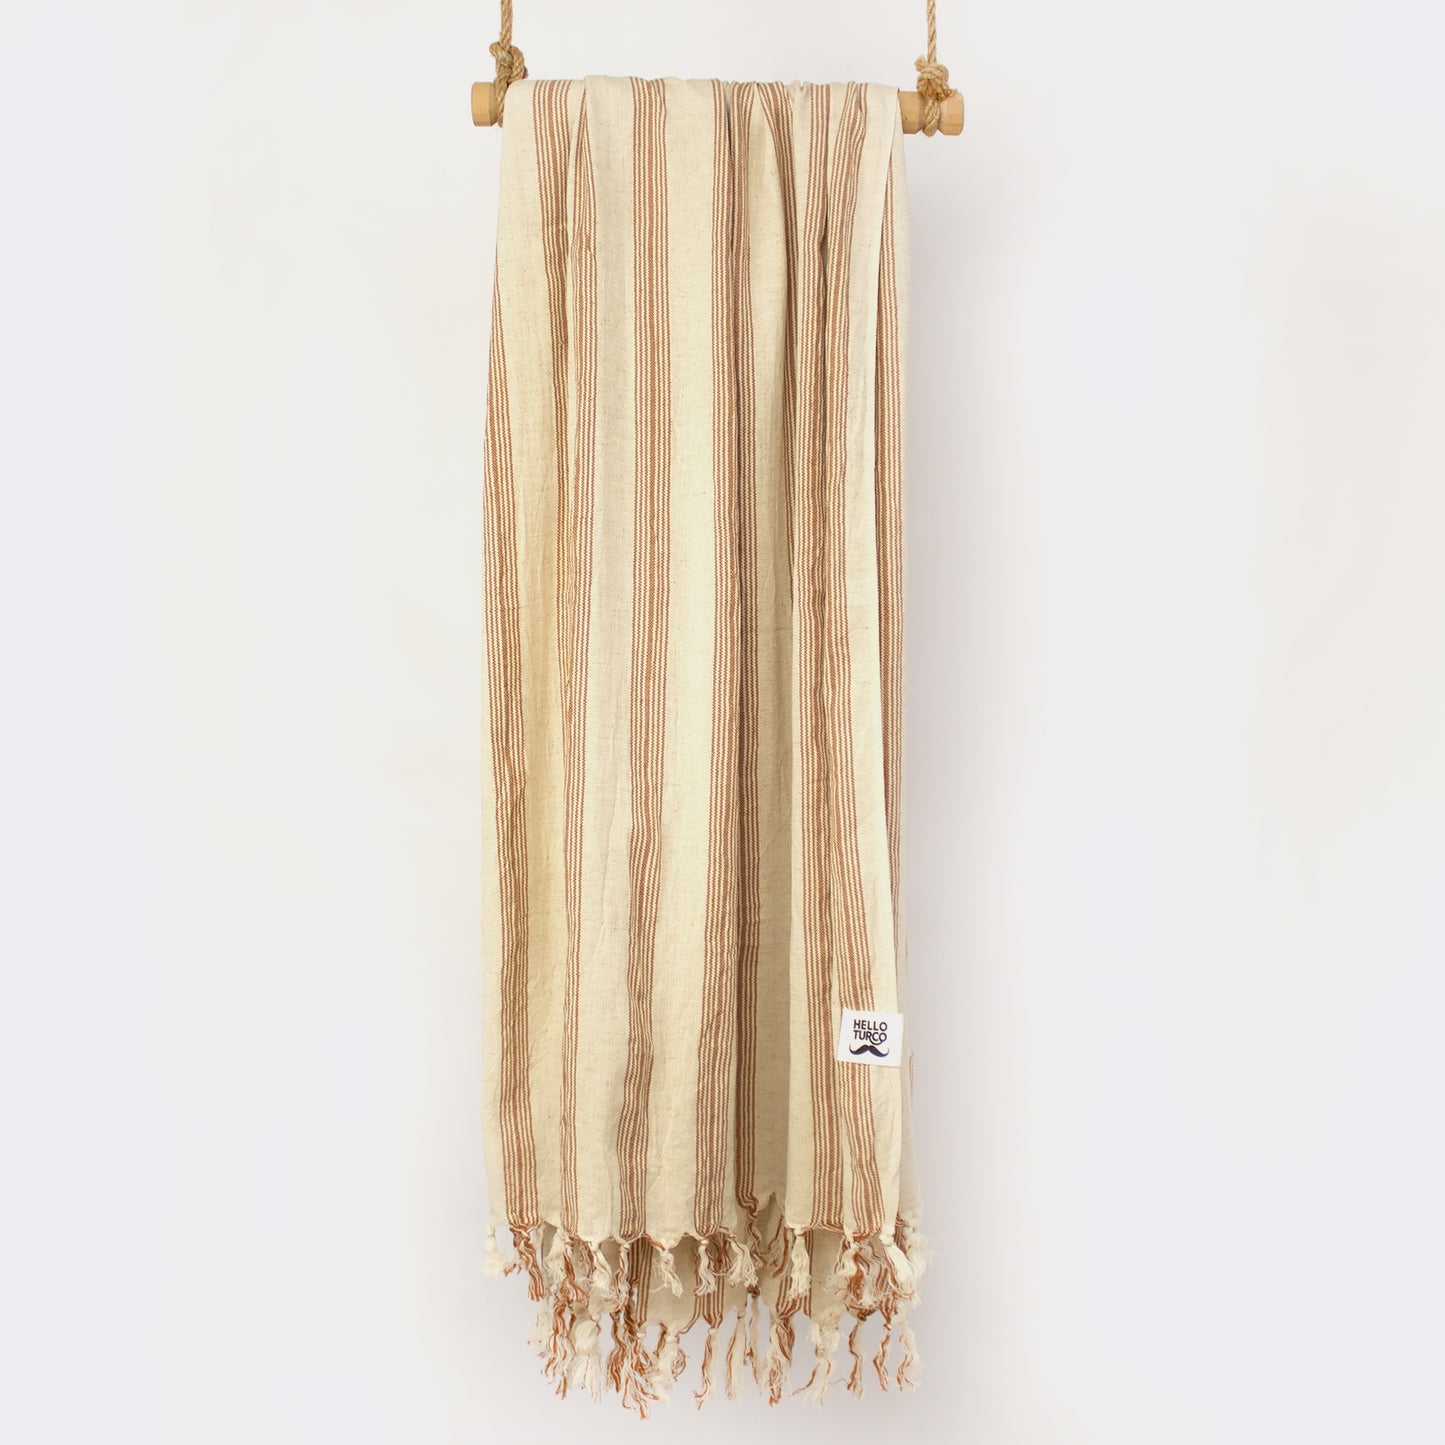 Ada Handwoven Turkish Towel